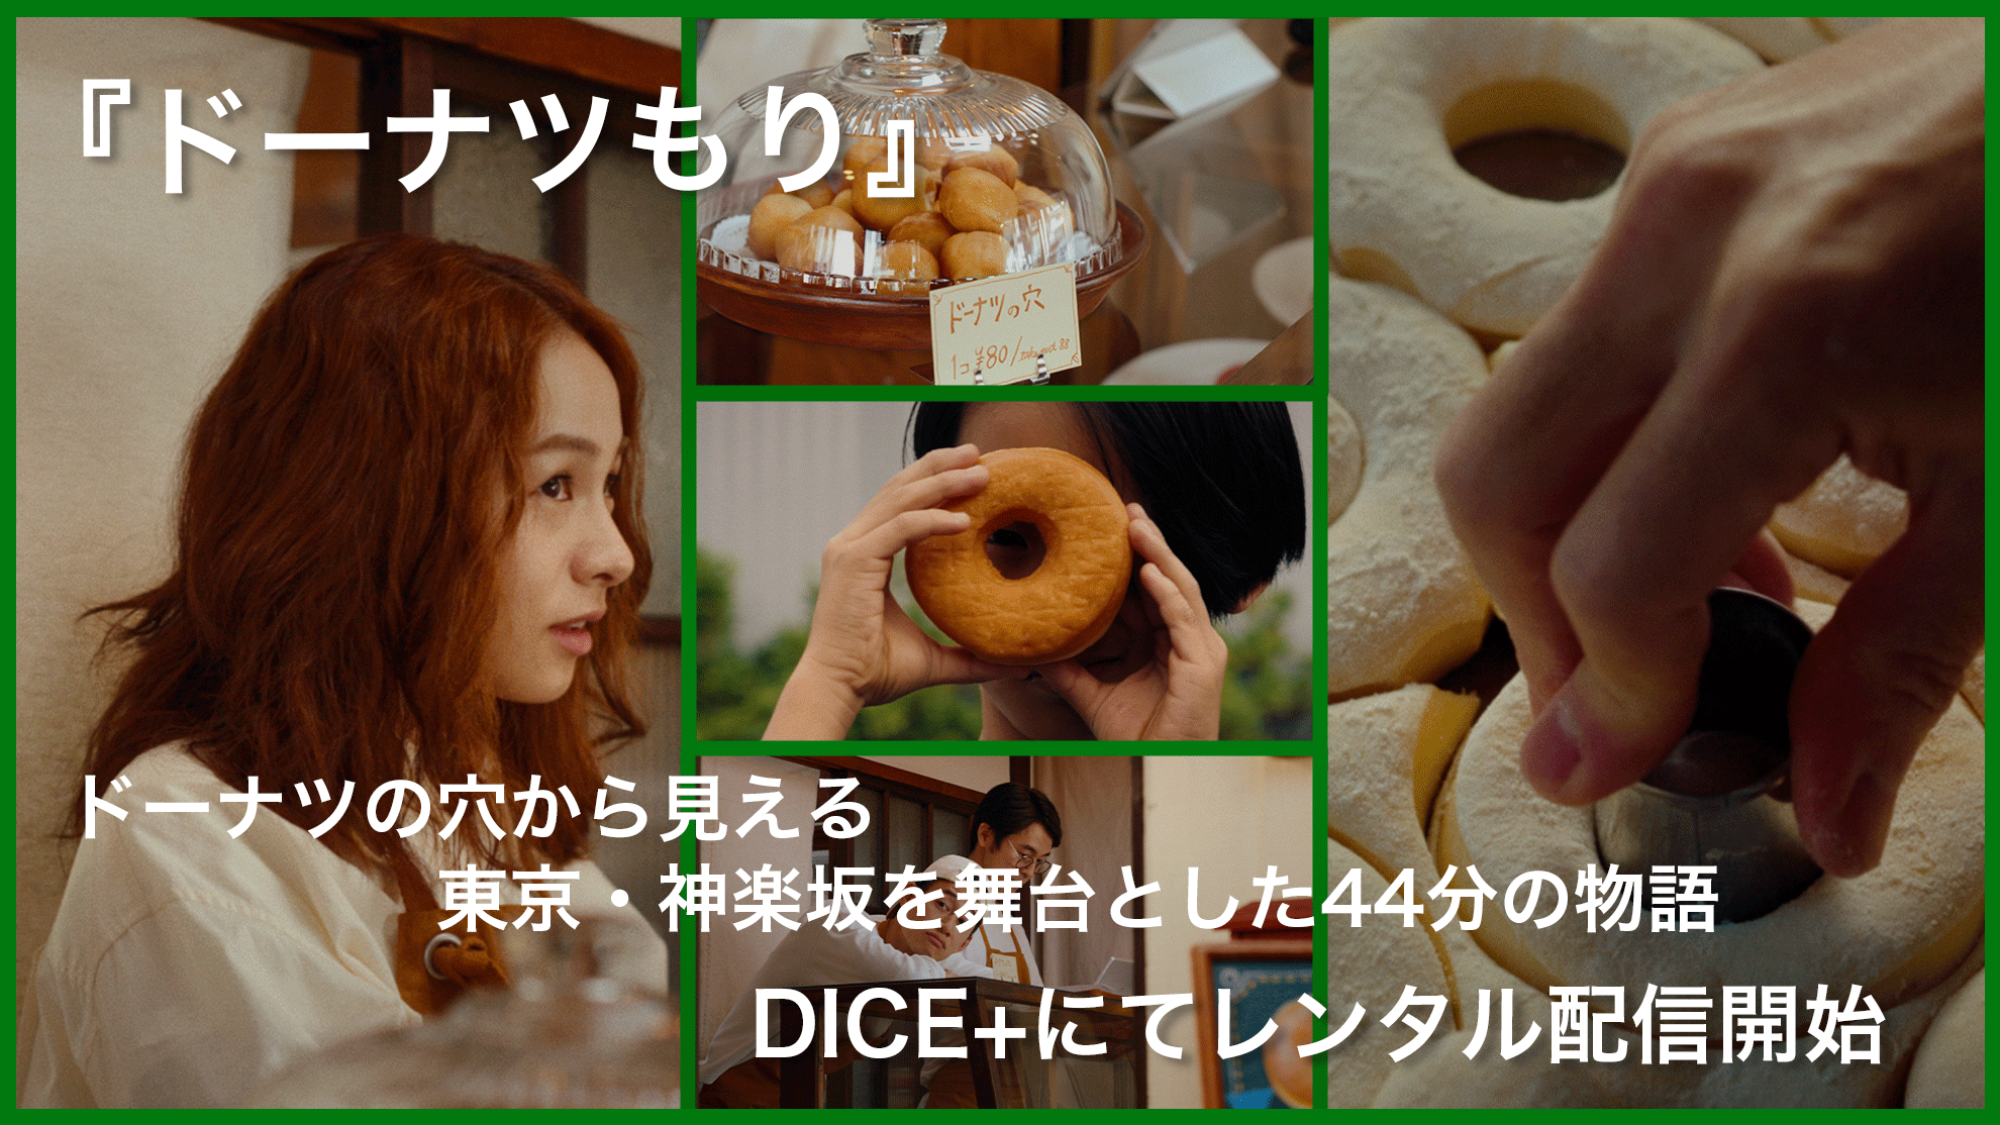 『ドーナツもり』ドーナツの穴から見える東京・神楽坂を舞台とした44分の物語 DICE+にてレンタル配信開始